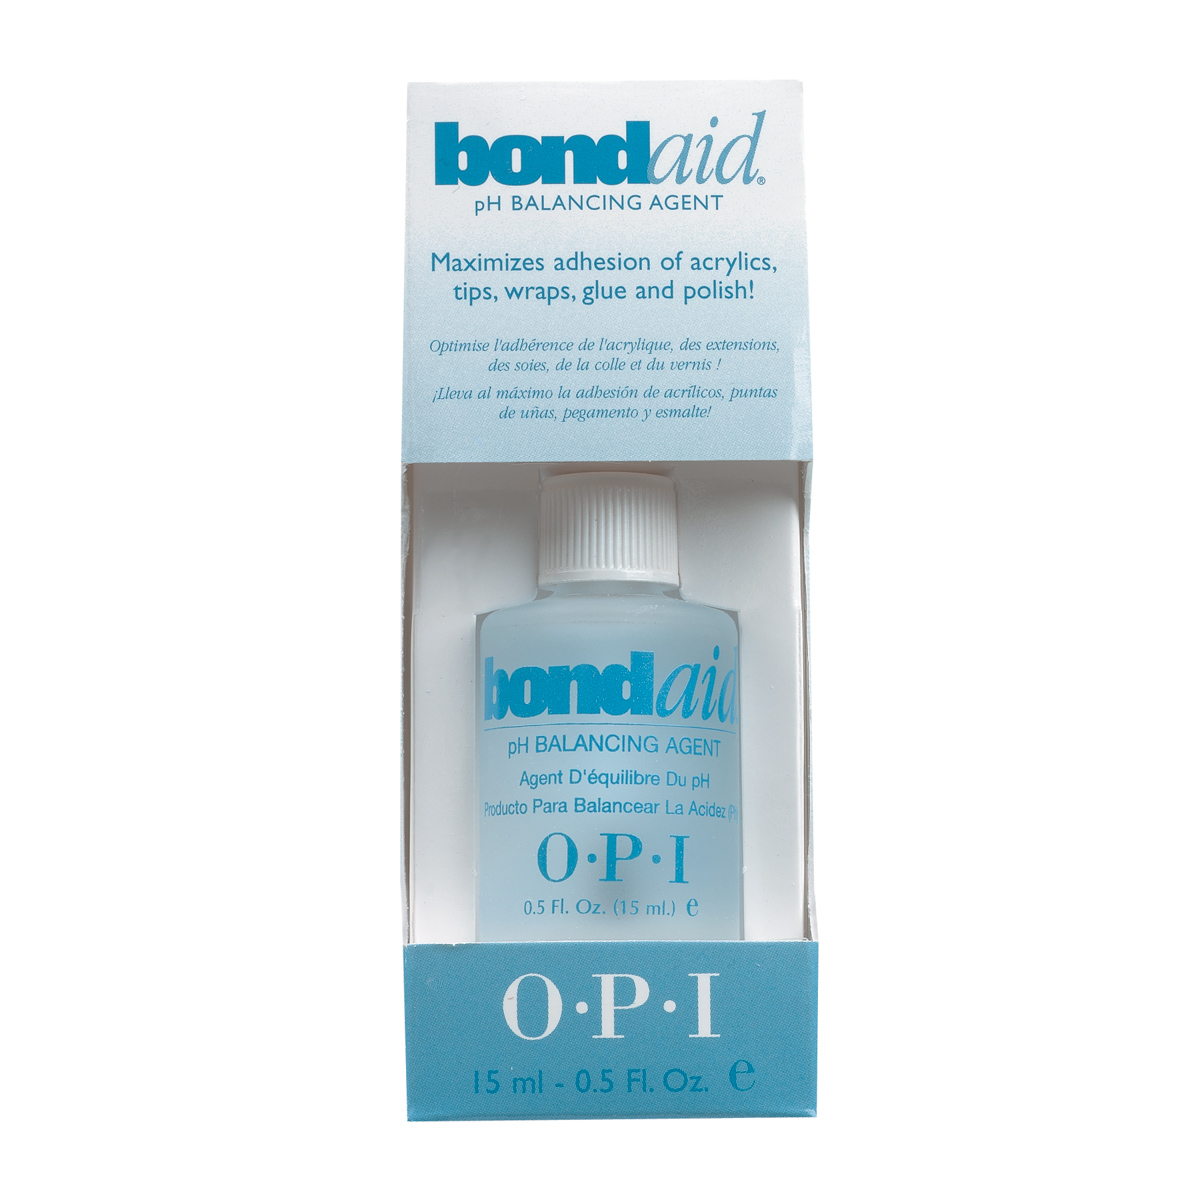 OPI Грунтовка-восстановитель ph баланса ногтя / Bond-Aid 15 